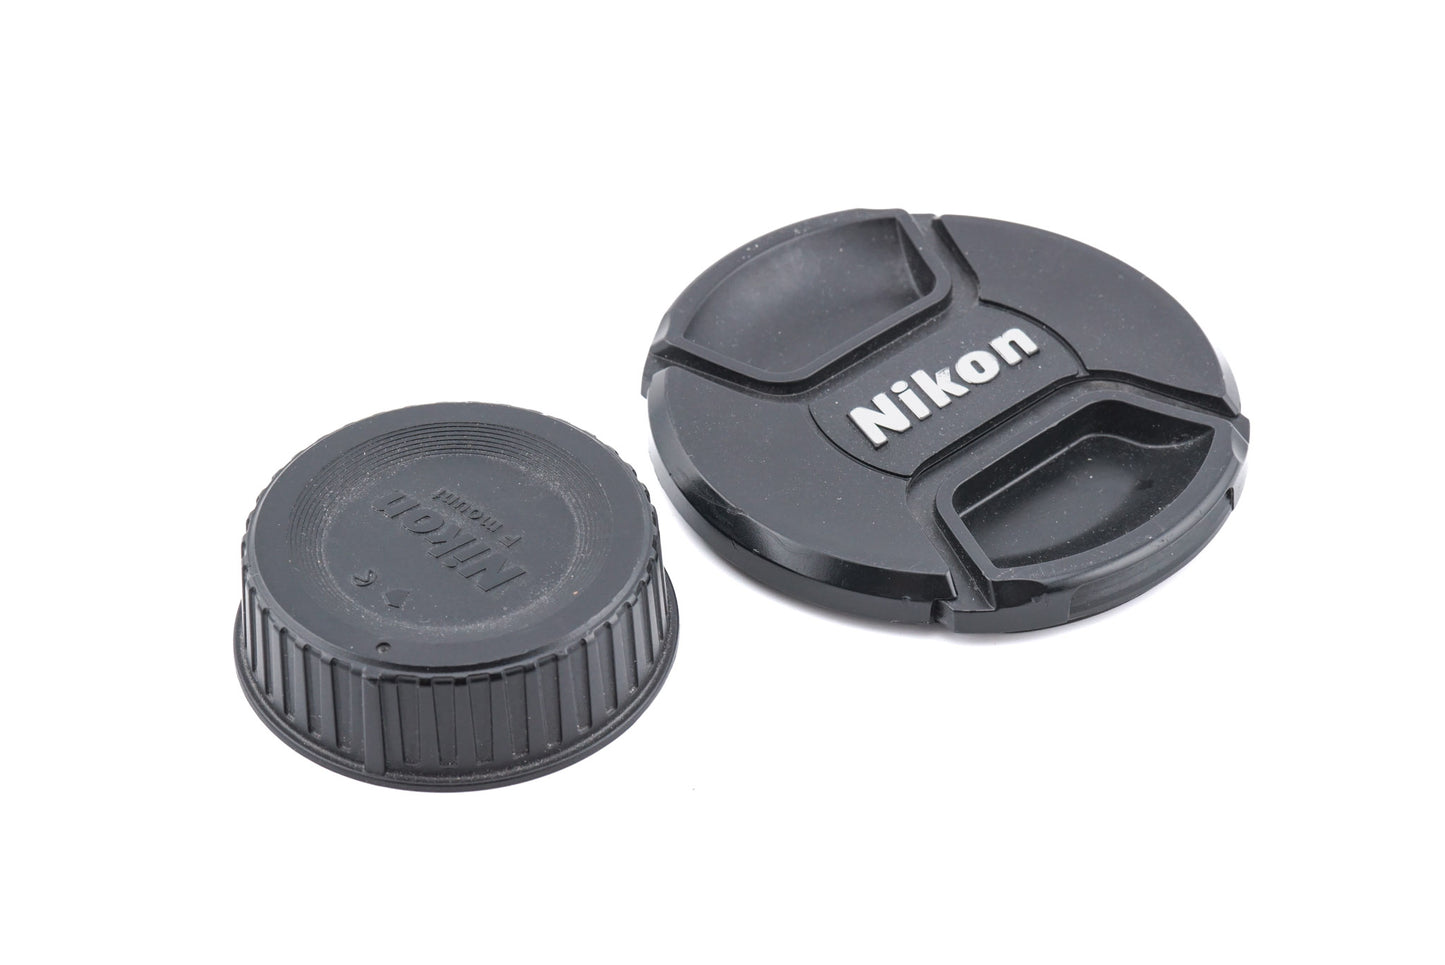 Nikon 24-70mm f2.8 G ED AF-S Nikkor